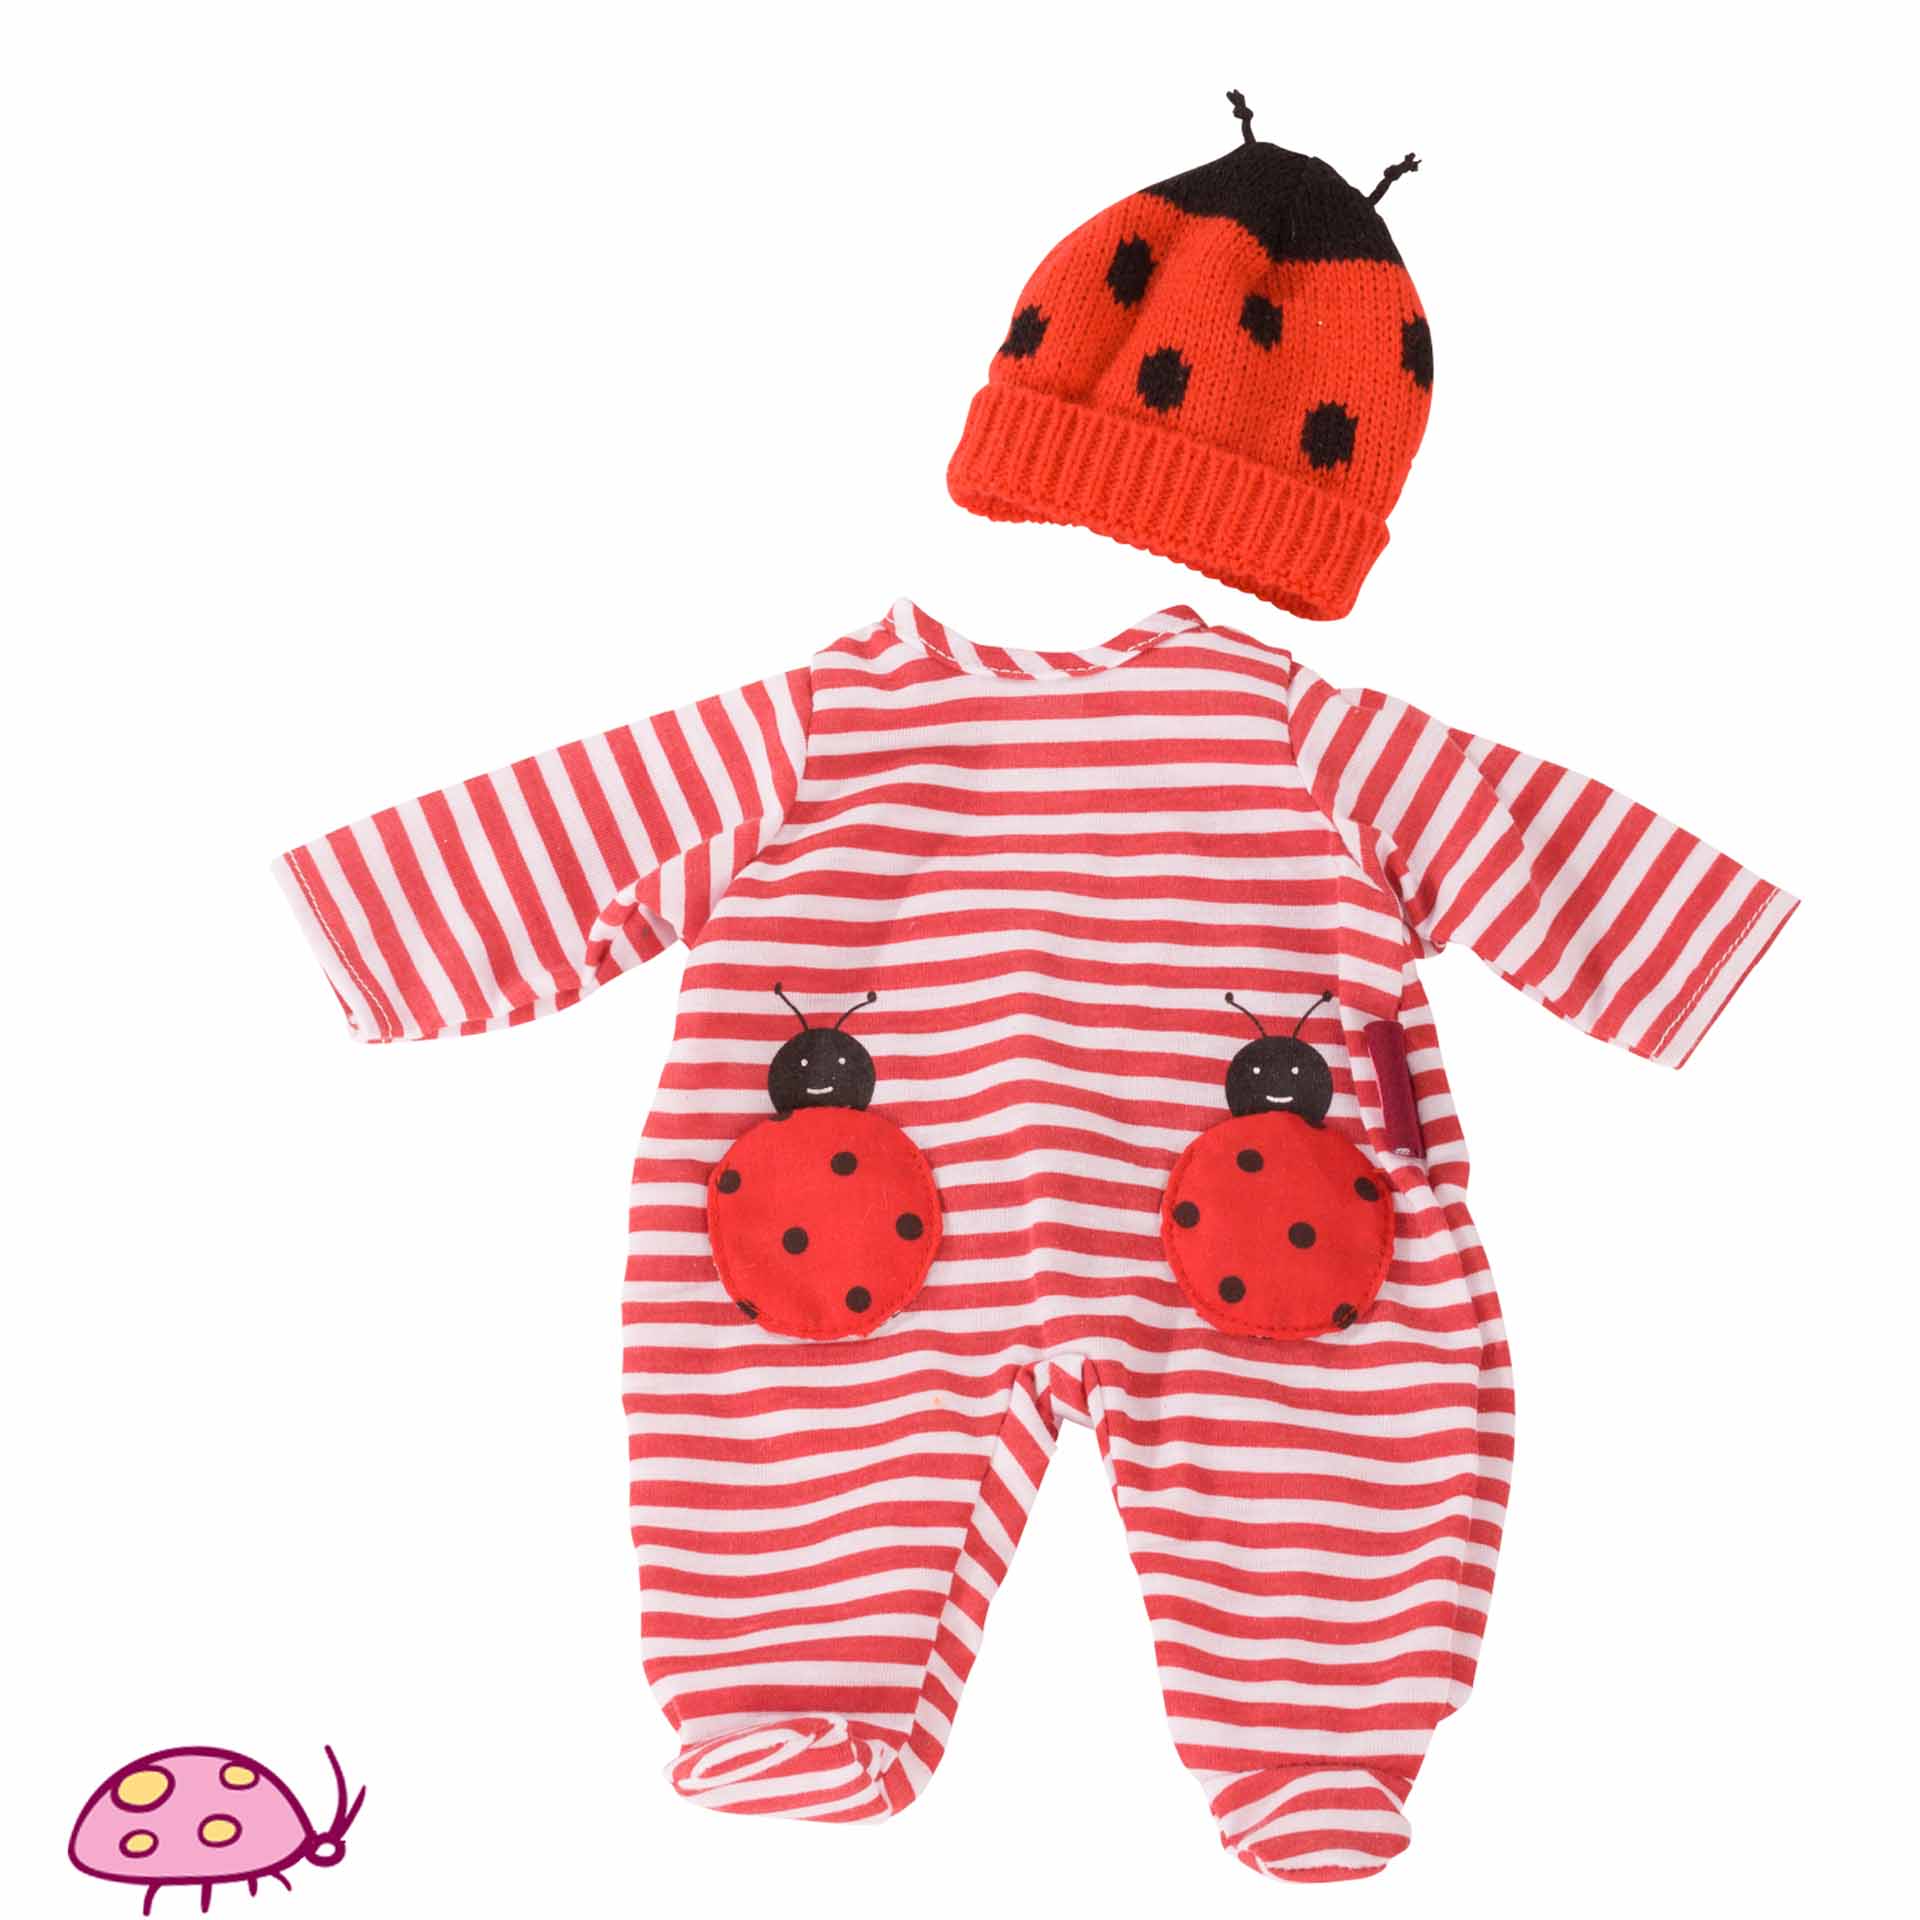 Combo Baby Ladybug size S